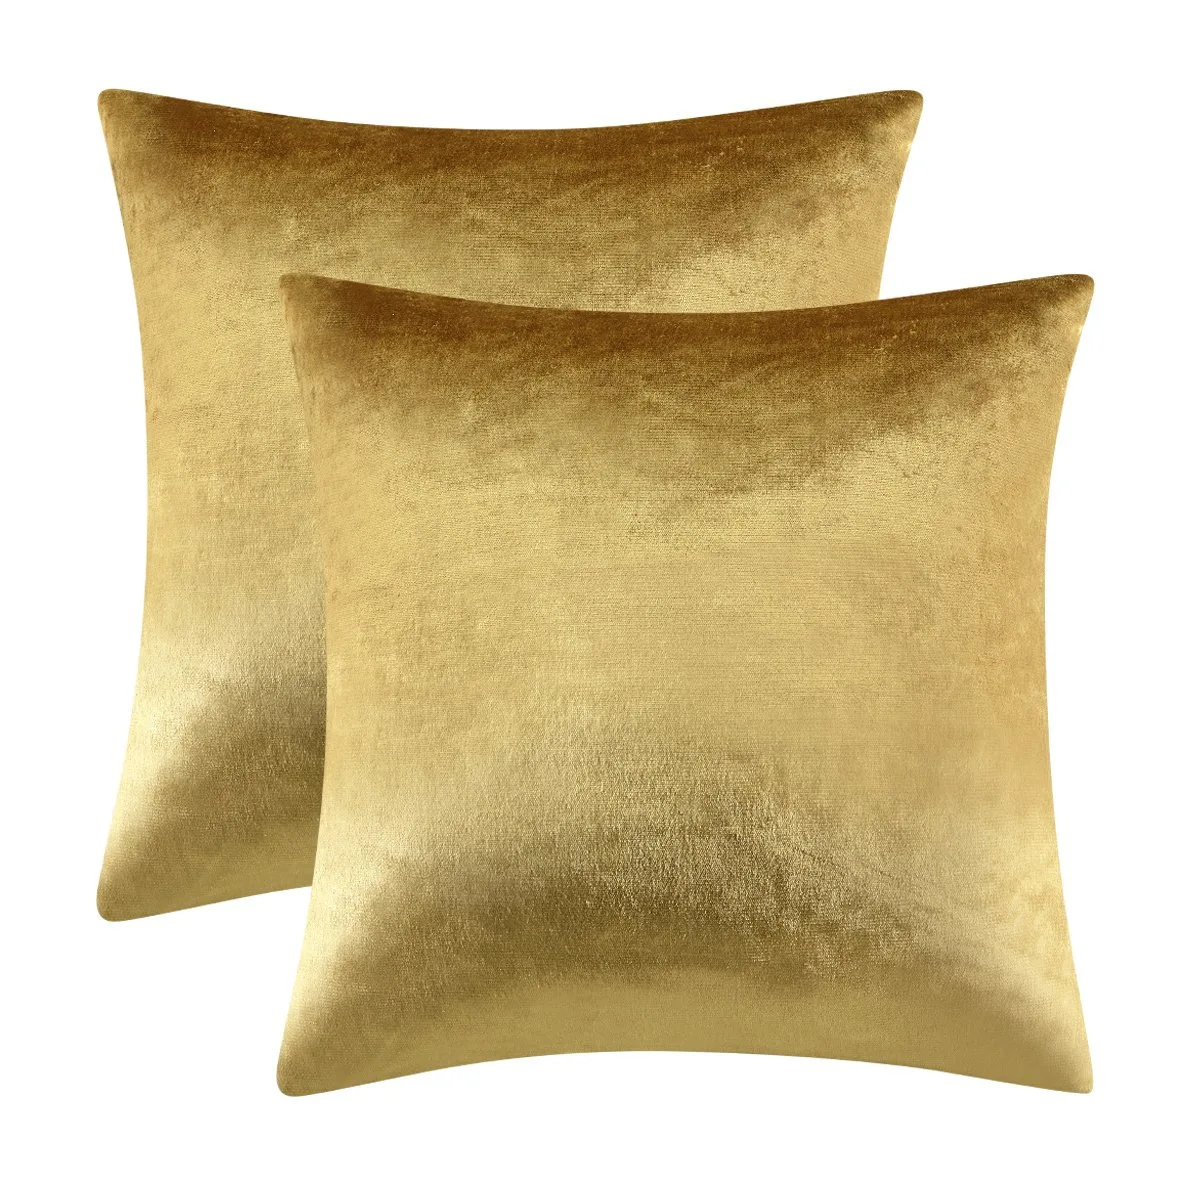 Nowa złota poszewka na poduszkę błyszcząca aksamitna tkanina poduszka 45x45cm poduszka poduszka poduszka na sofę 1 szt